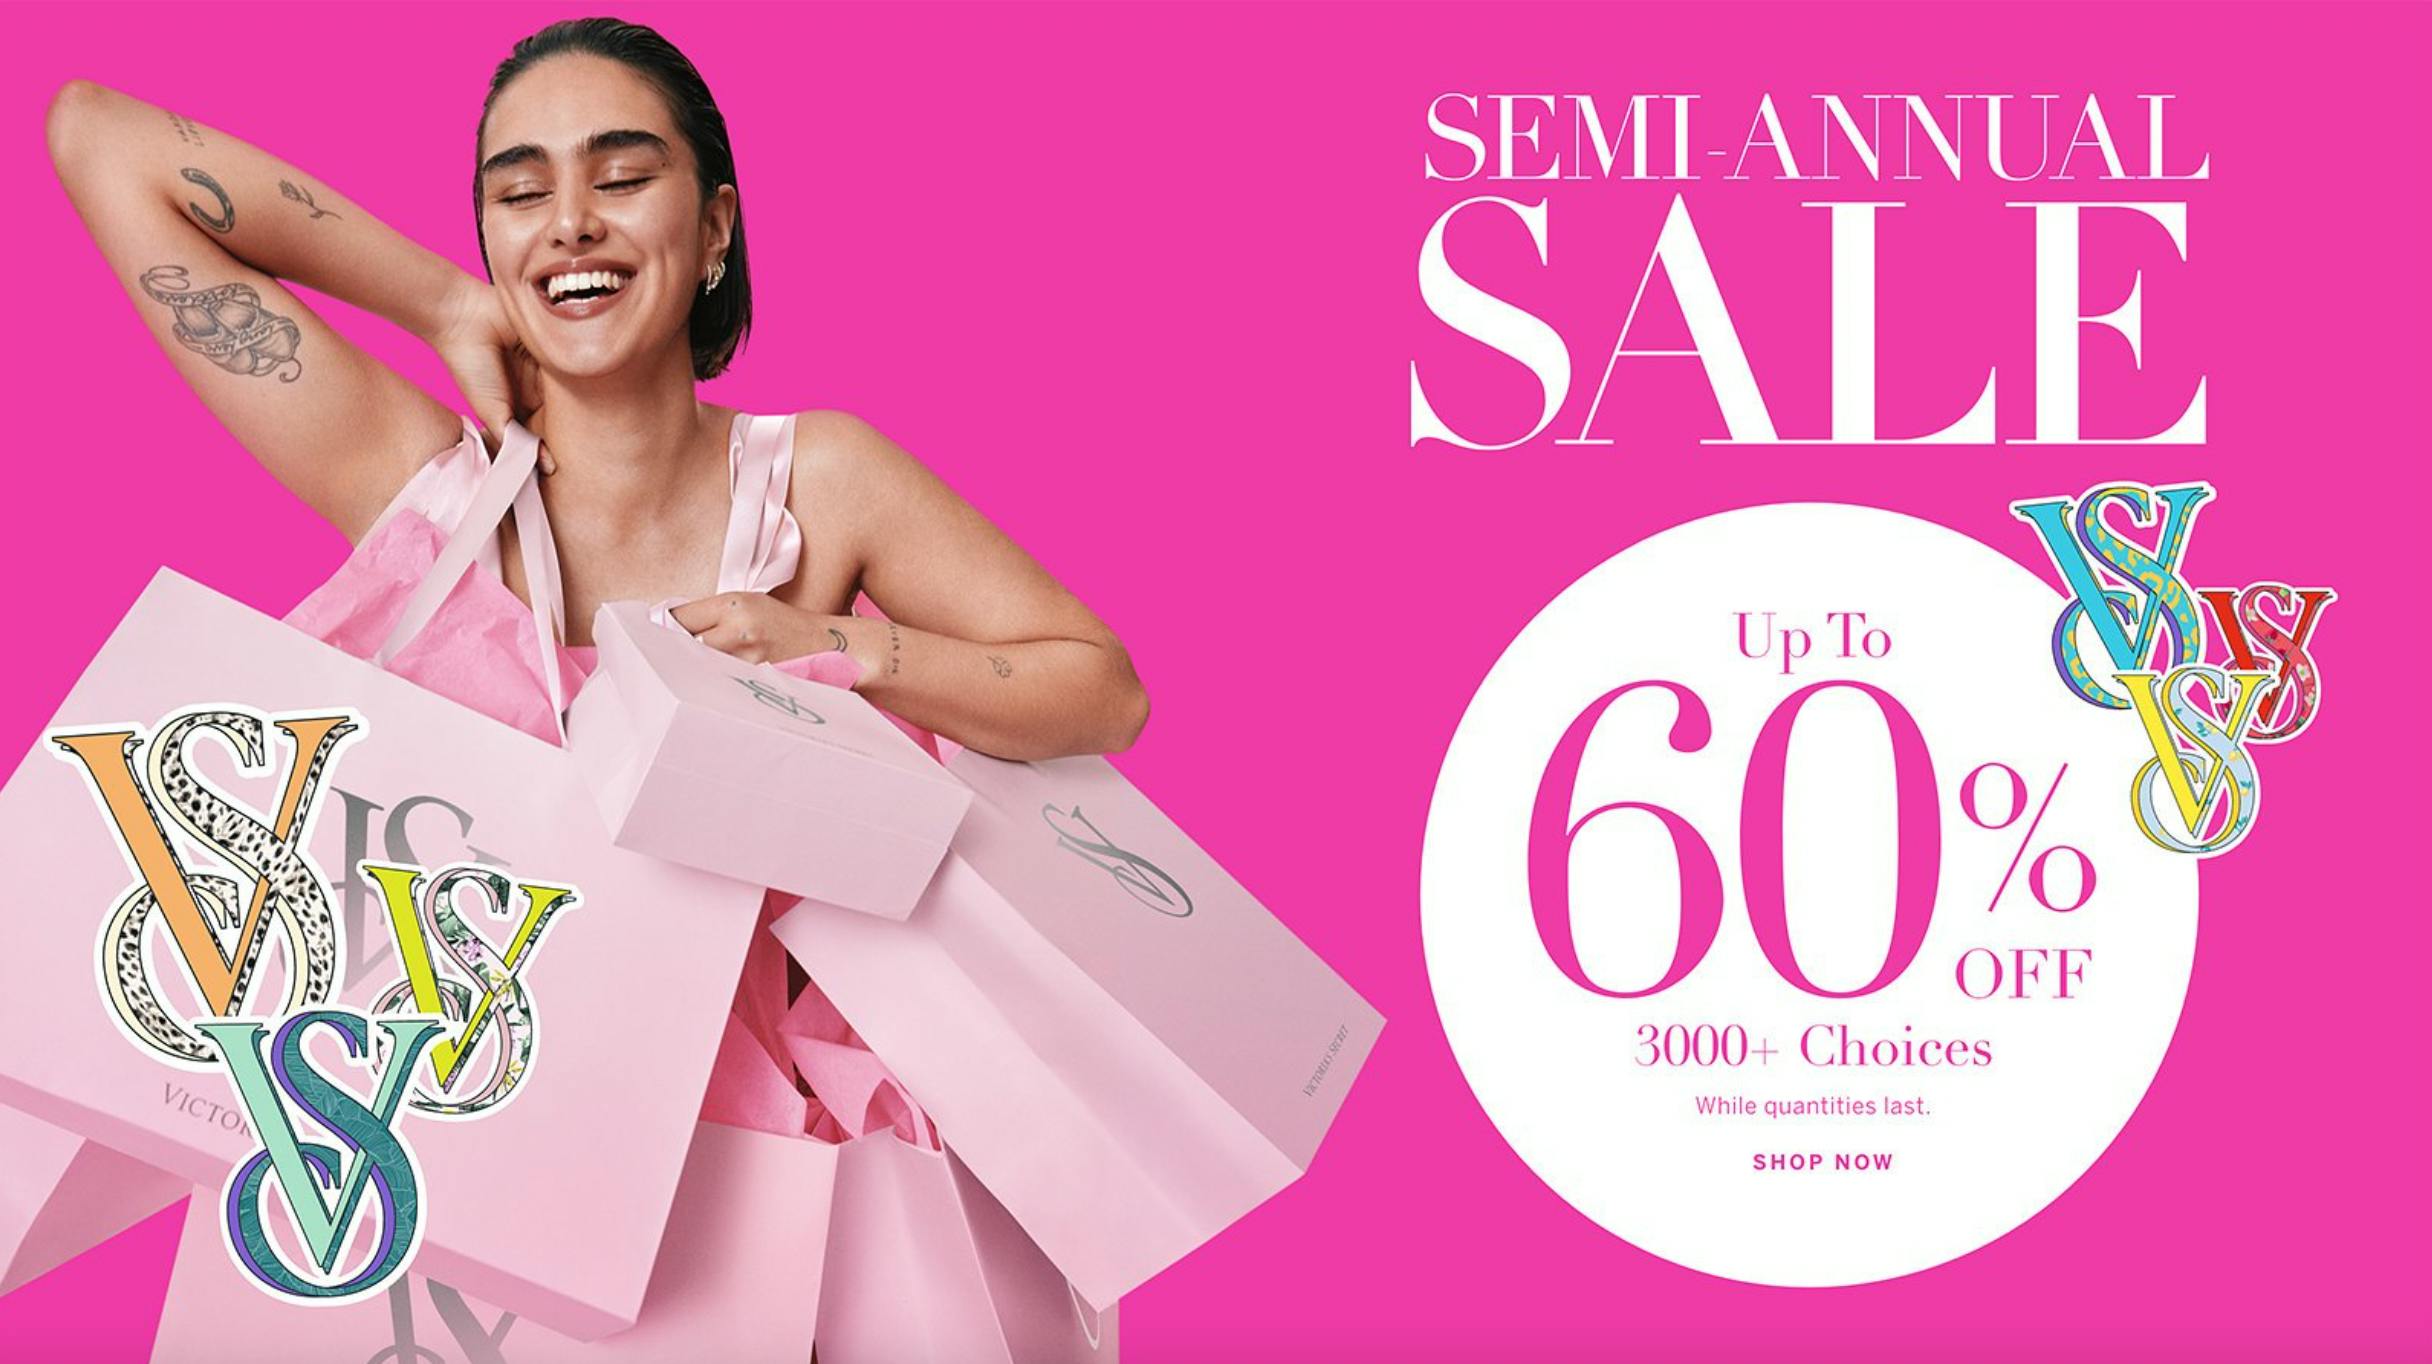 Victoria's Secret Semi-Annual Sale: $3 